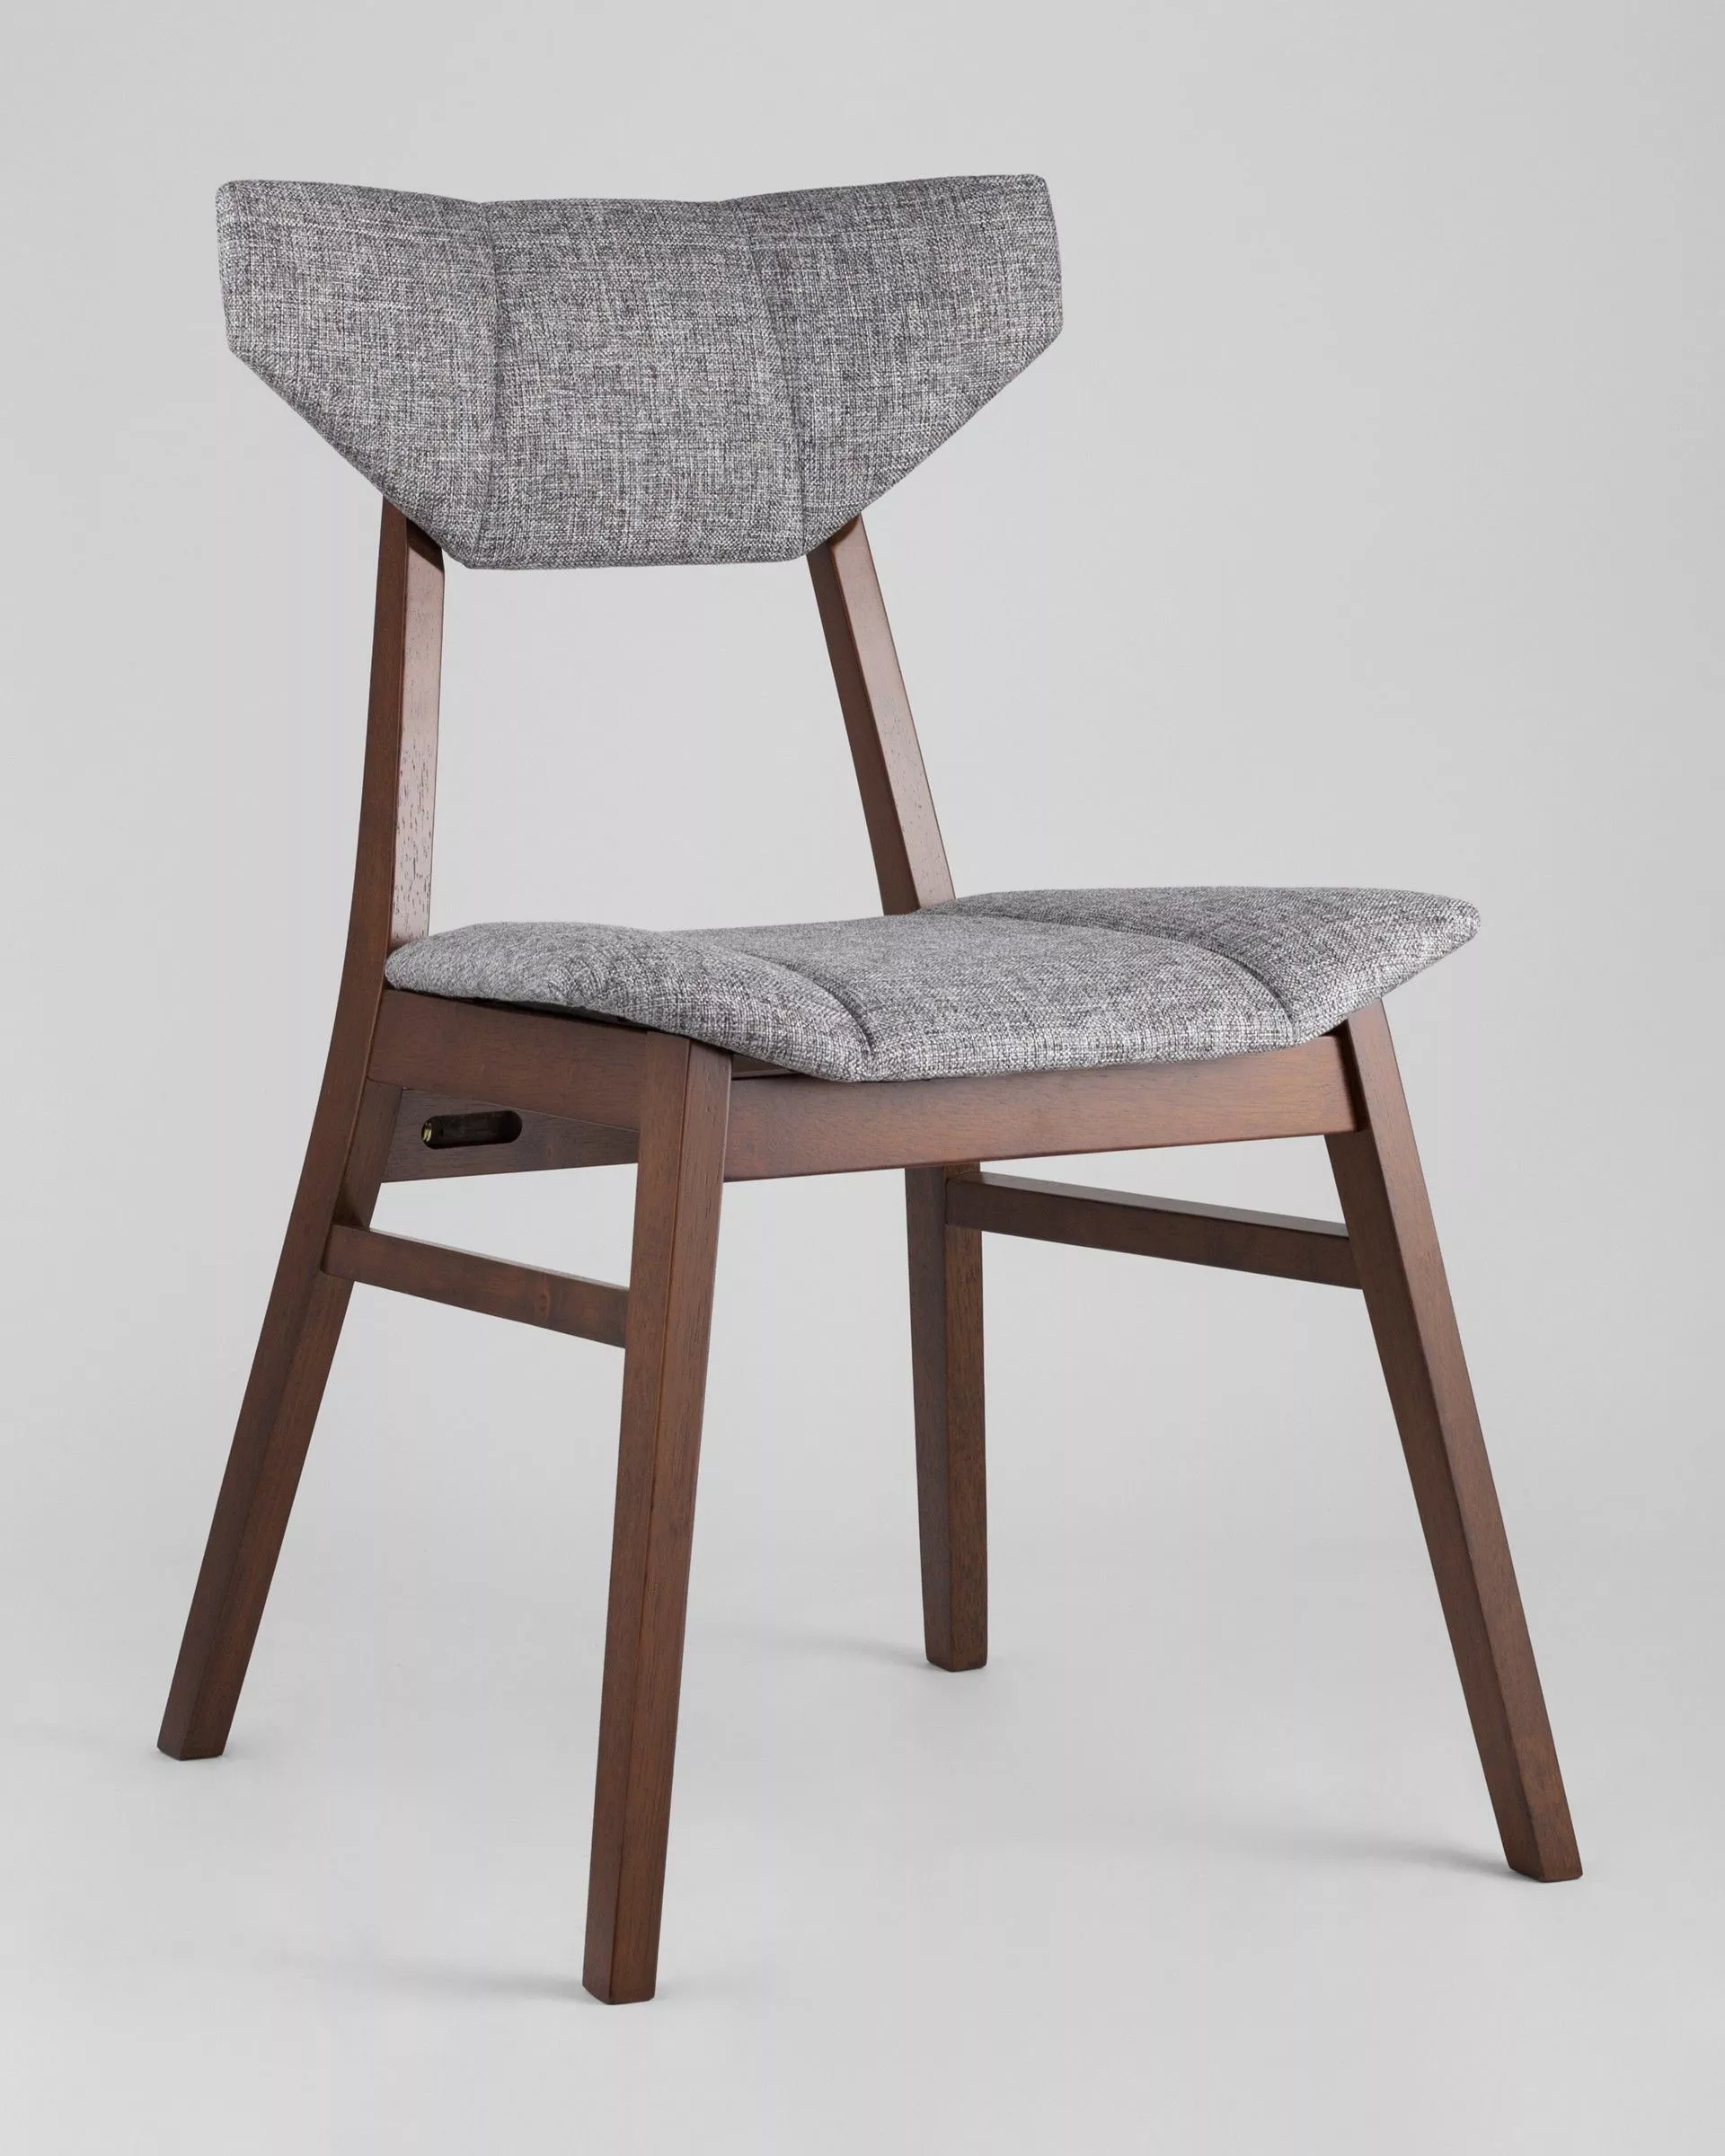 Комплект стульев обеденный TOR серый 4 шт